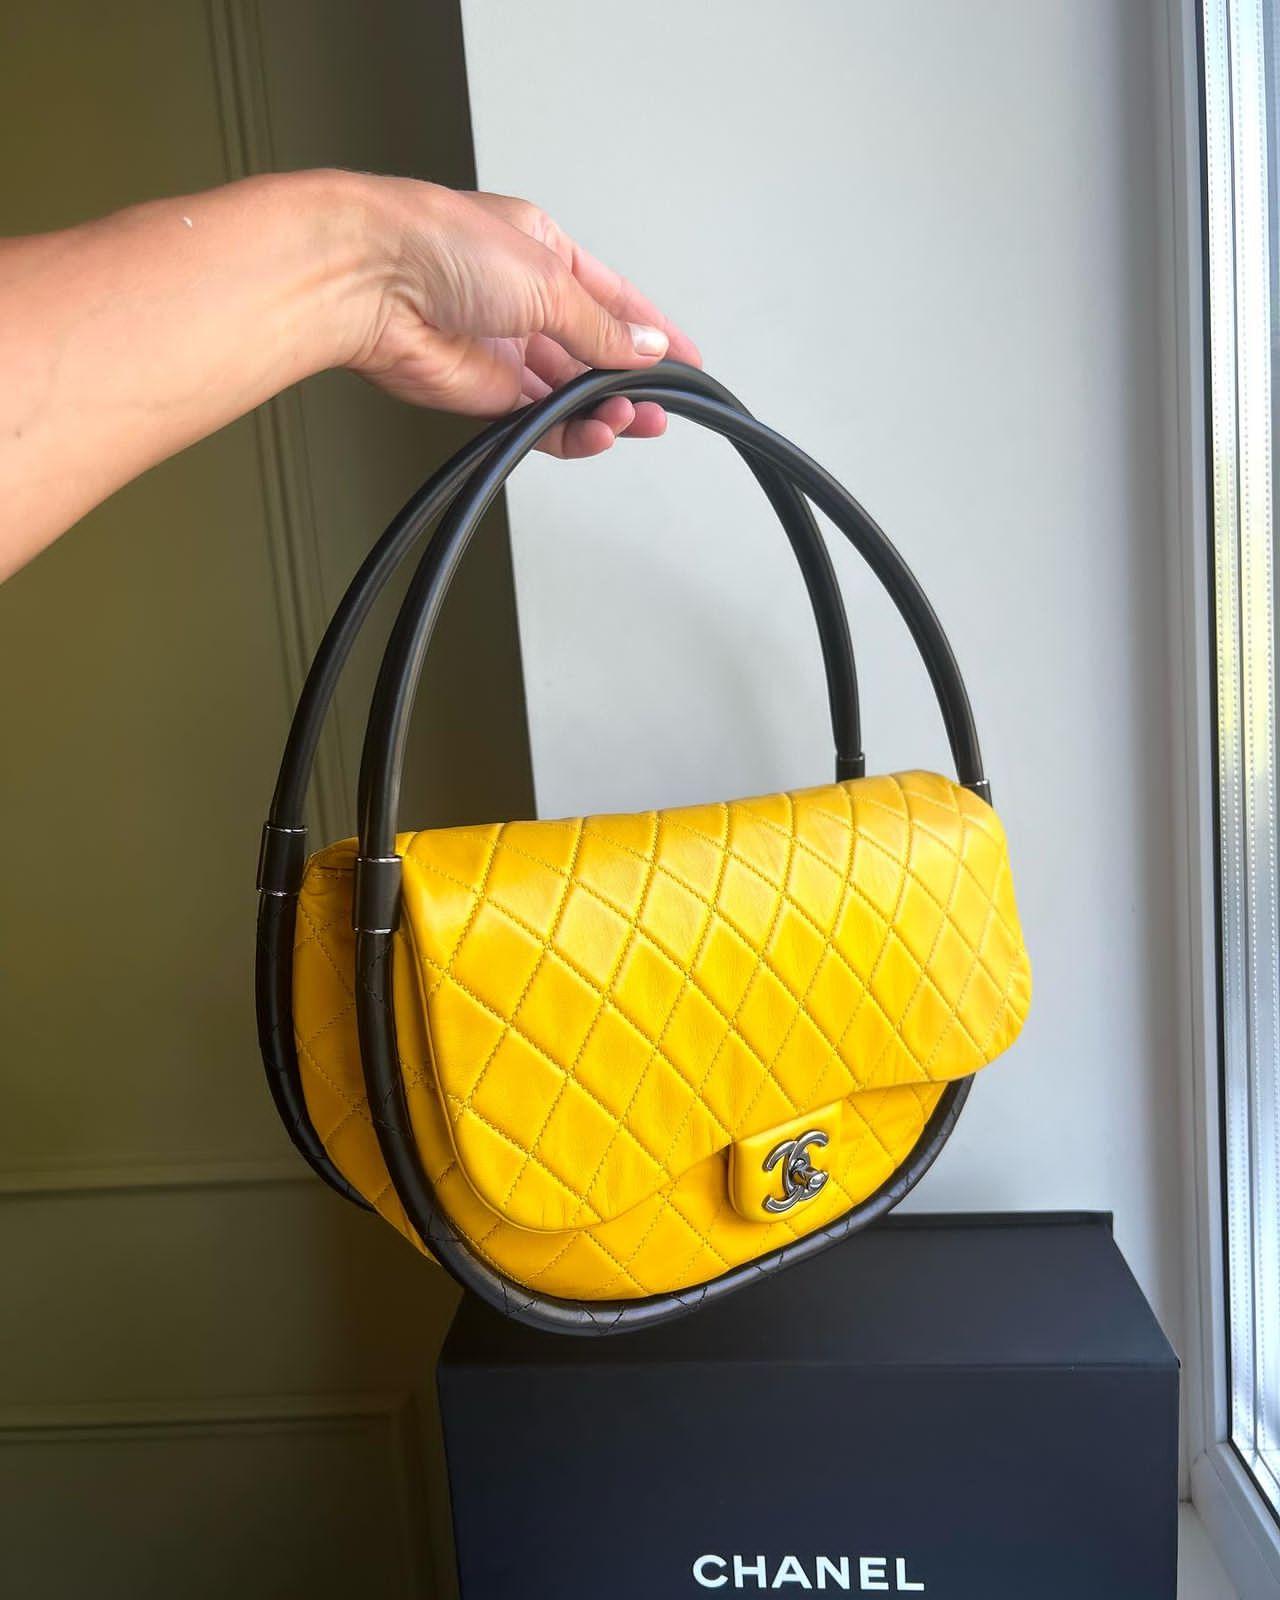 Inspiriert von der architektonischen Moderne hat Karl Lagerfeld die klassische Silhouette der Half Flap Bag geometrisch verfremdet und so die ikonische Hula Hoop Bag geschaffen. Auf dem Laufsteg von Chanel im Frühjahr 2013 sorgte die übergroße